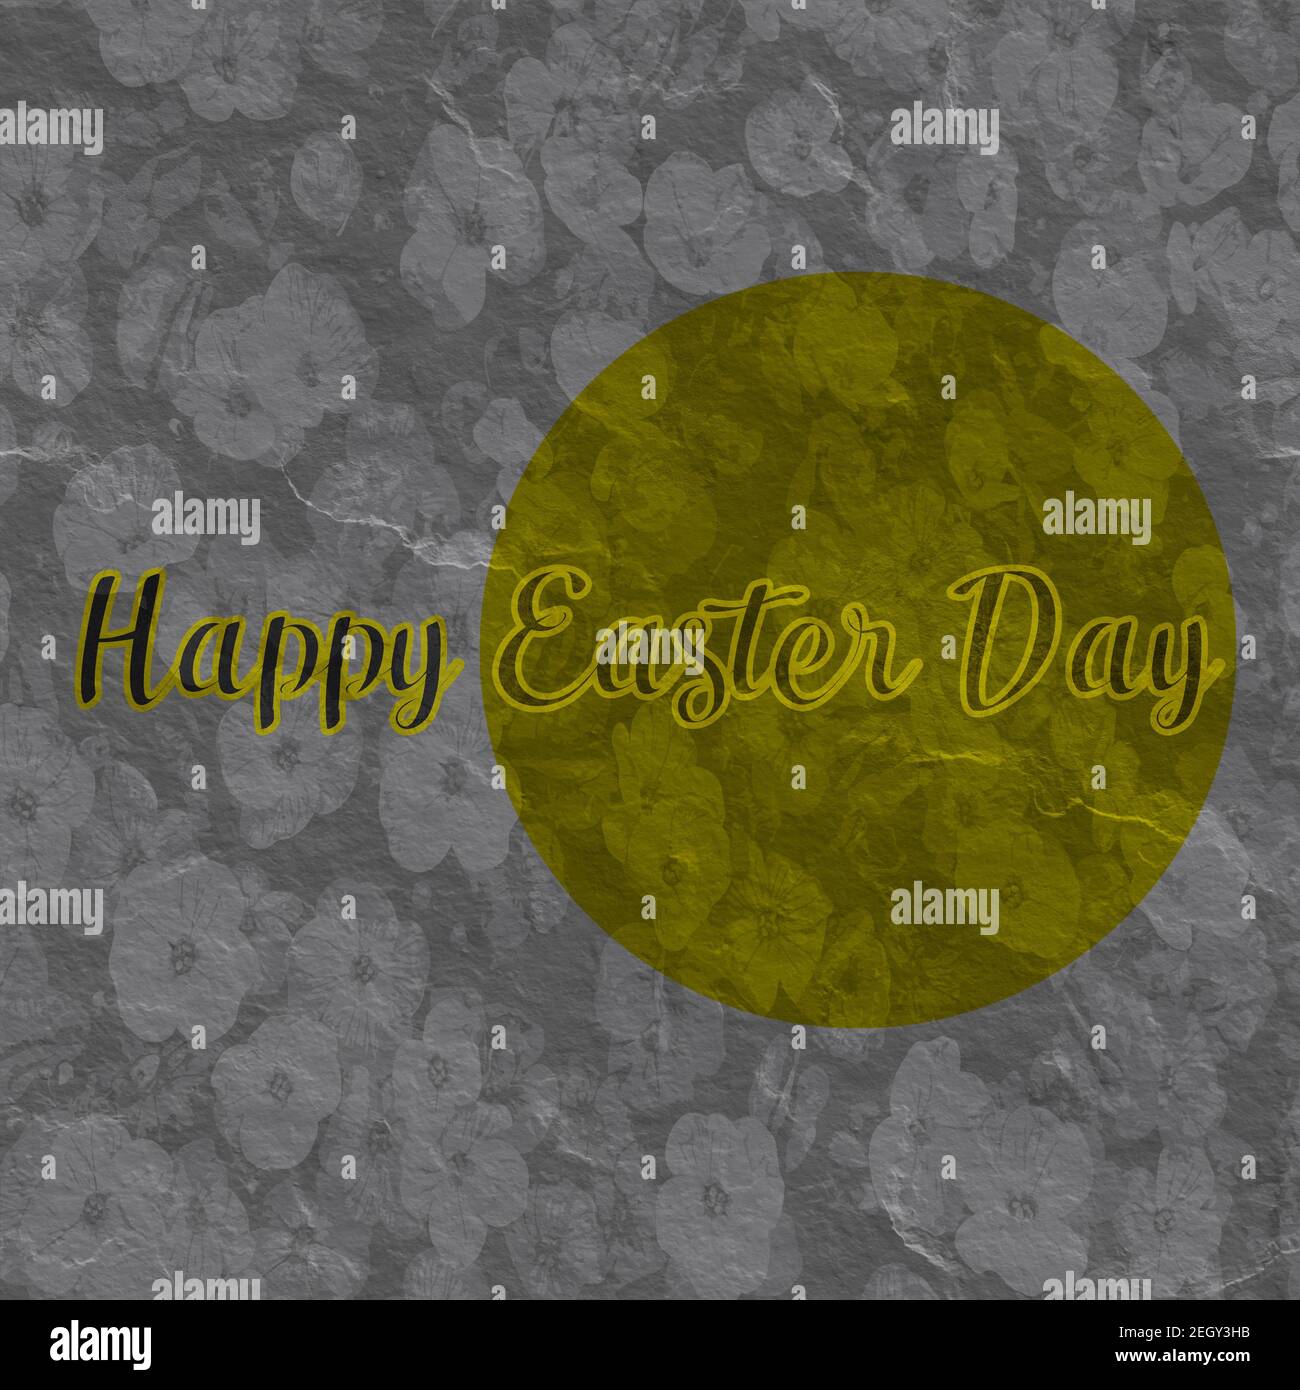 Happy Easter Day Vektor Grafik Text. Stockfoto